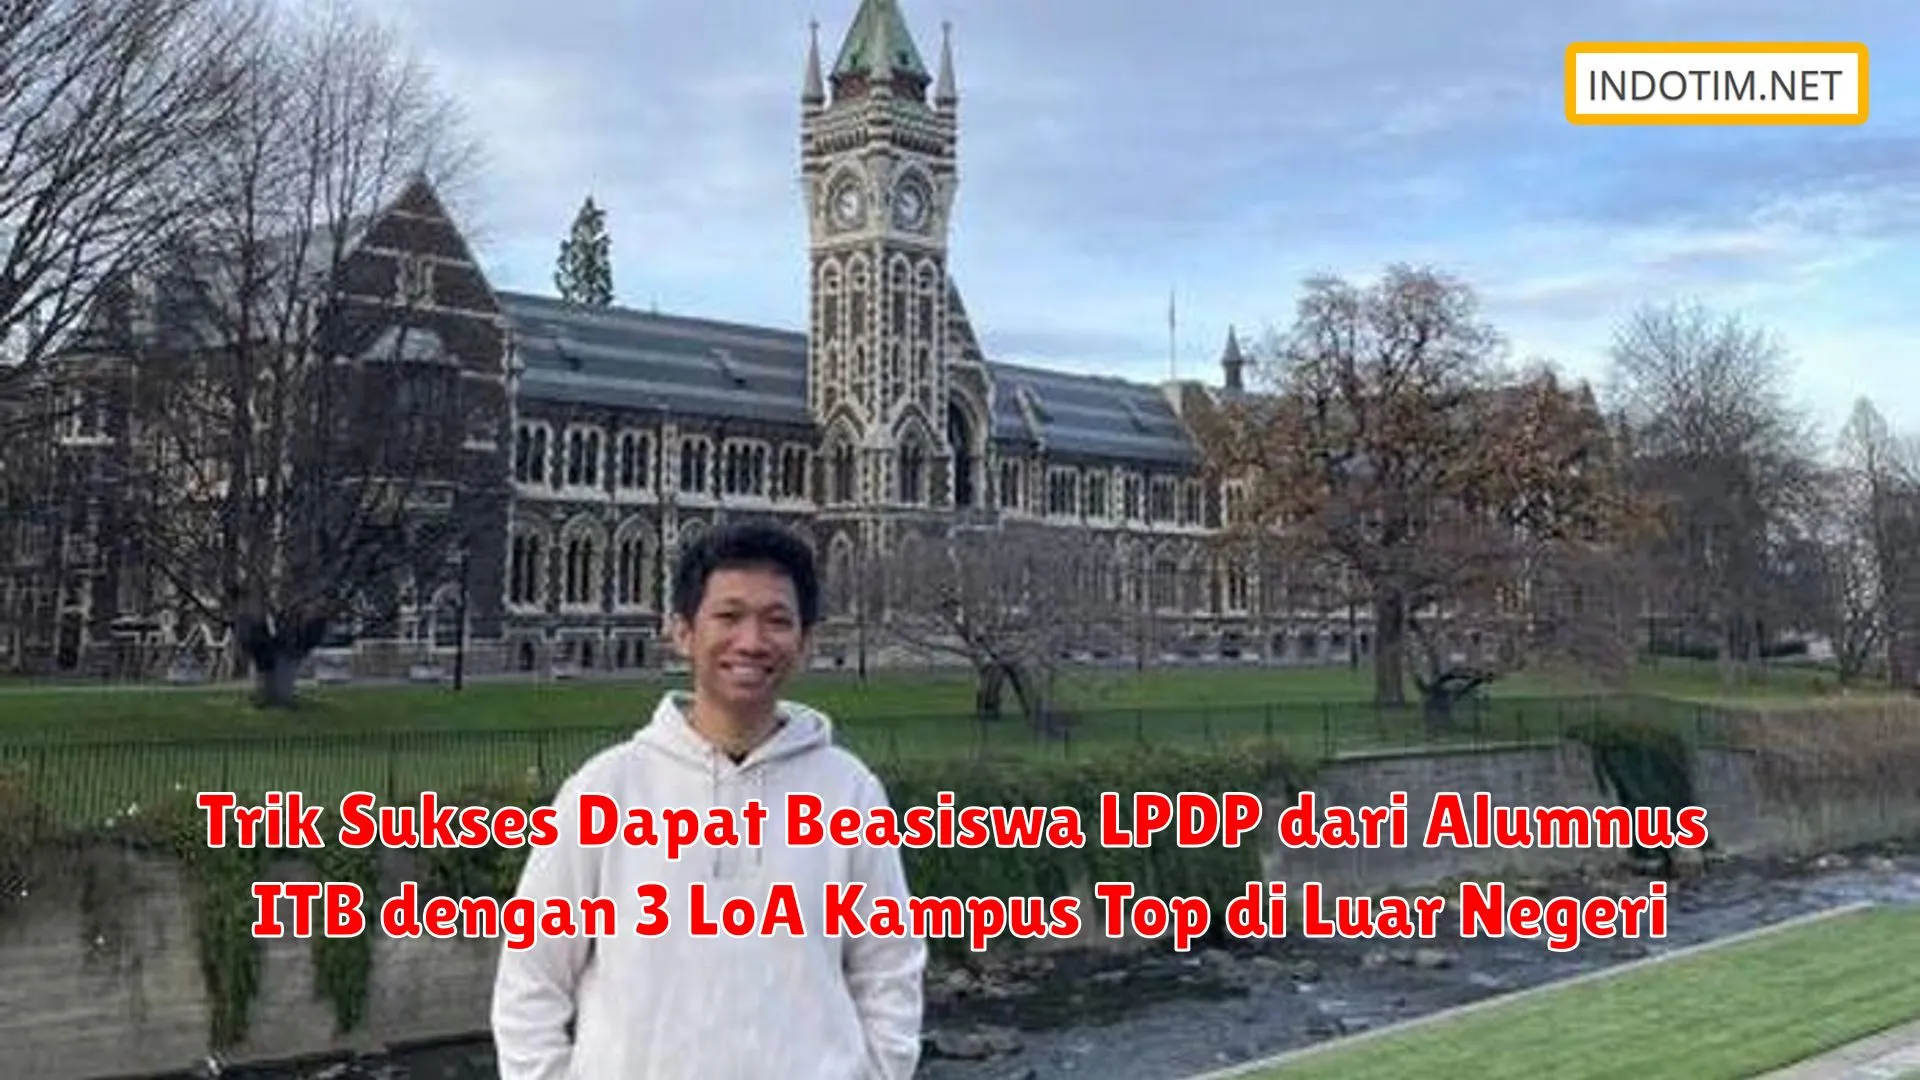 Trik Sukses Dapat Beasiswa LPDP dari Alumnus ITB dengan 3 LoA Kampus Top di Luar Negeri